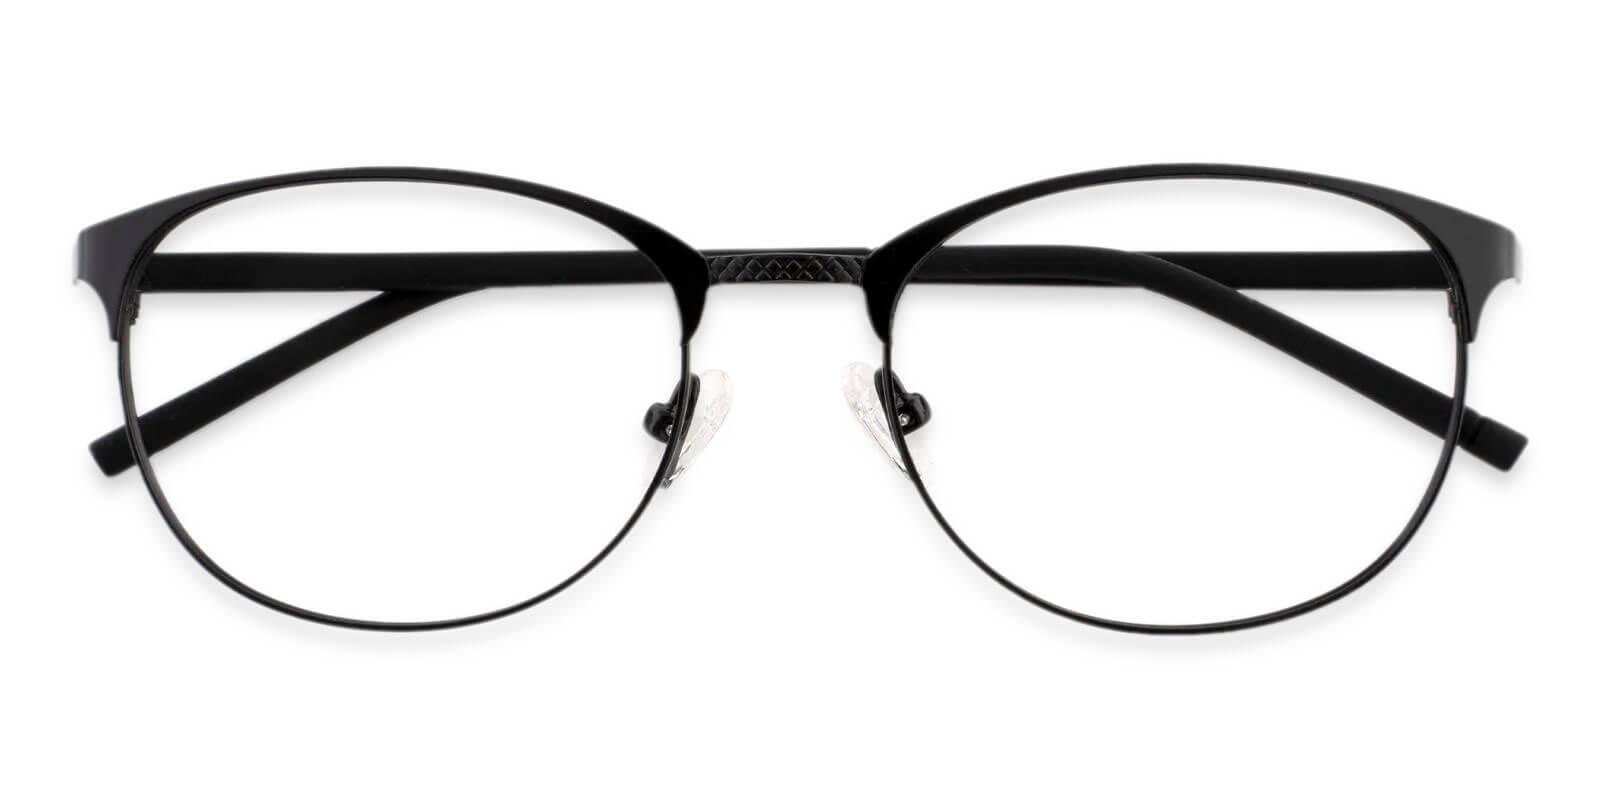 Emily Black Metal Eyeglasses , Lightweight , NosePads Frames from ABBE Glasses